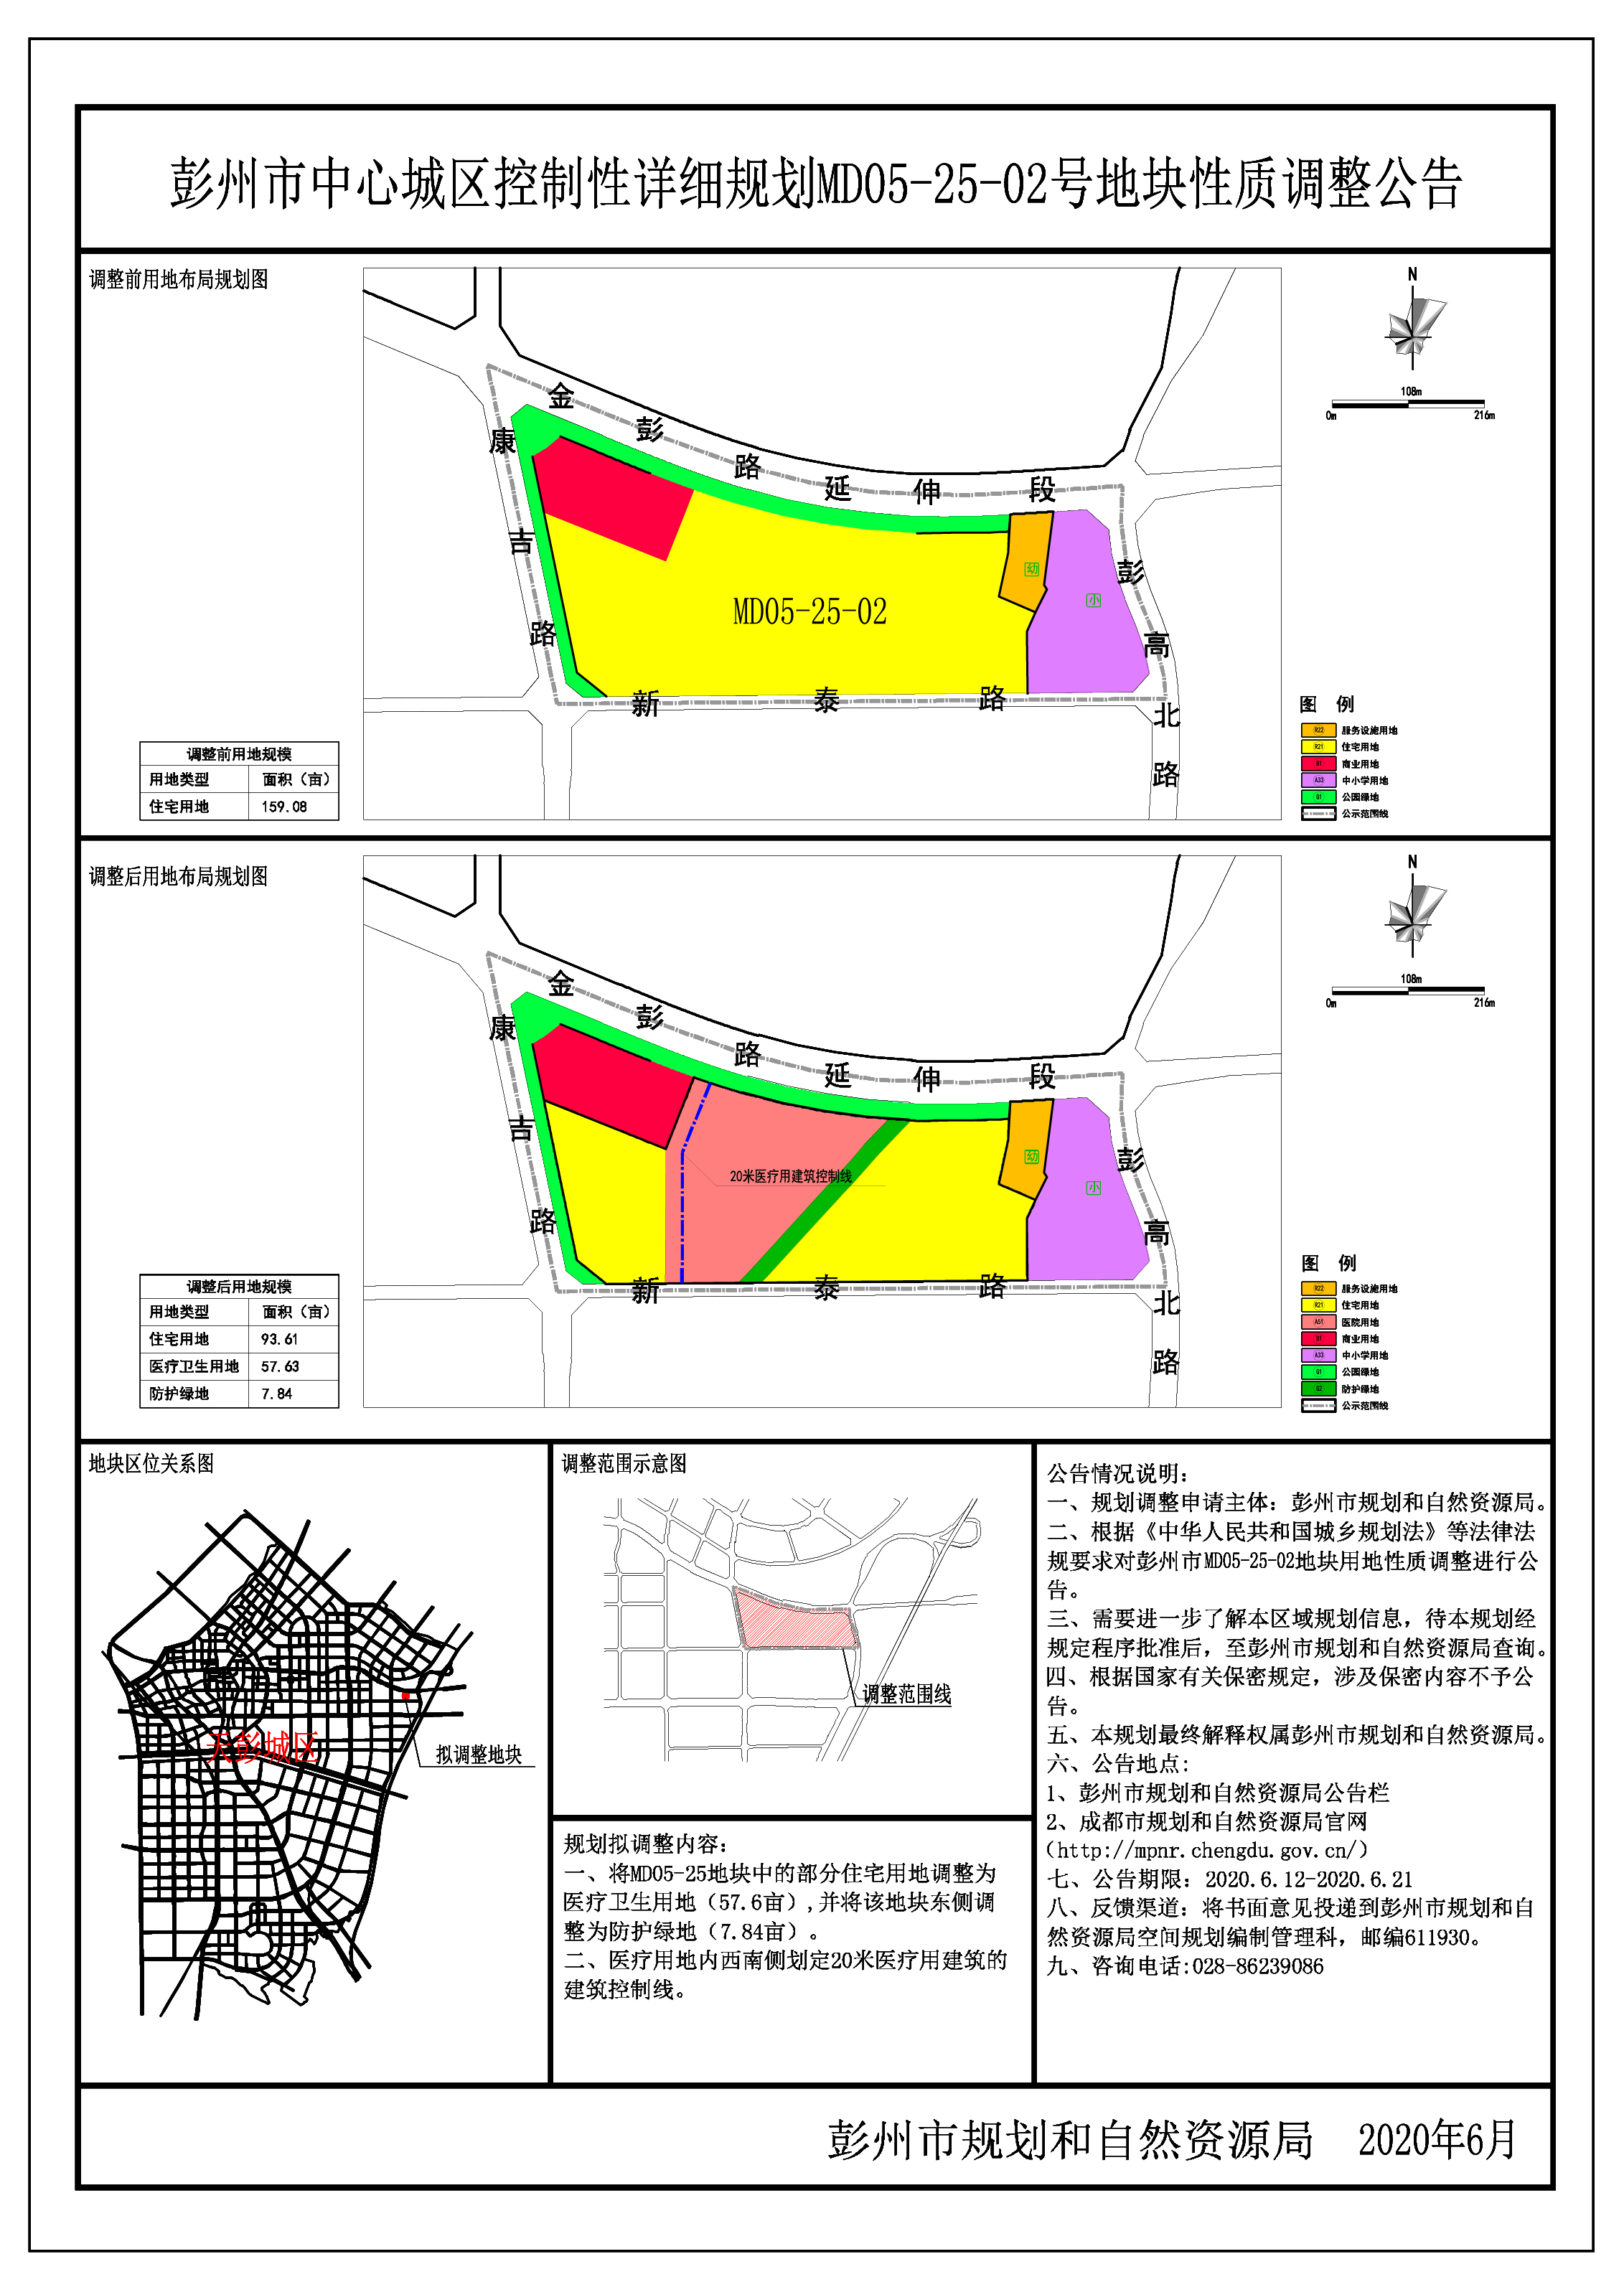 彭州市中心城区控制性详细规划md05-25-02号地块性质调整公告